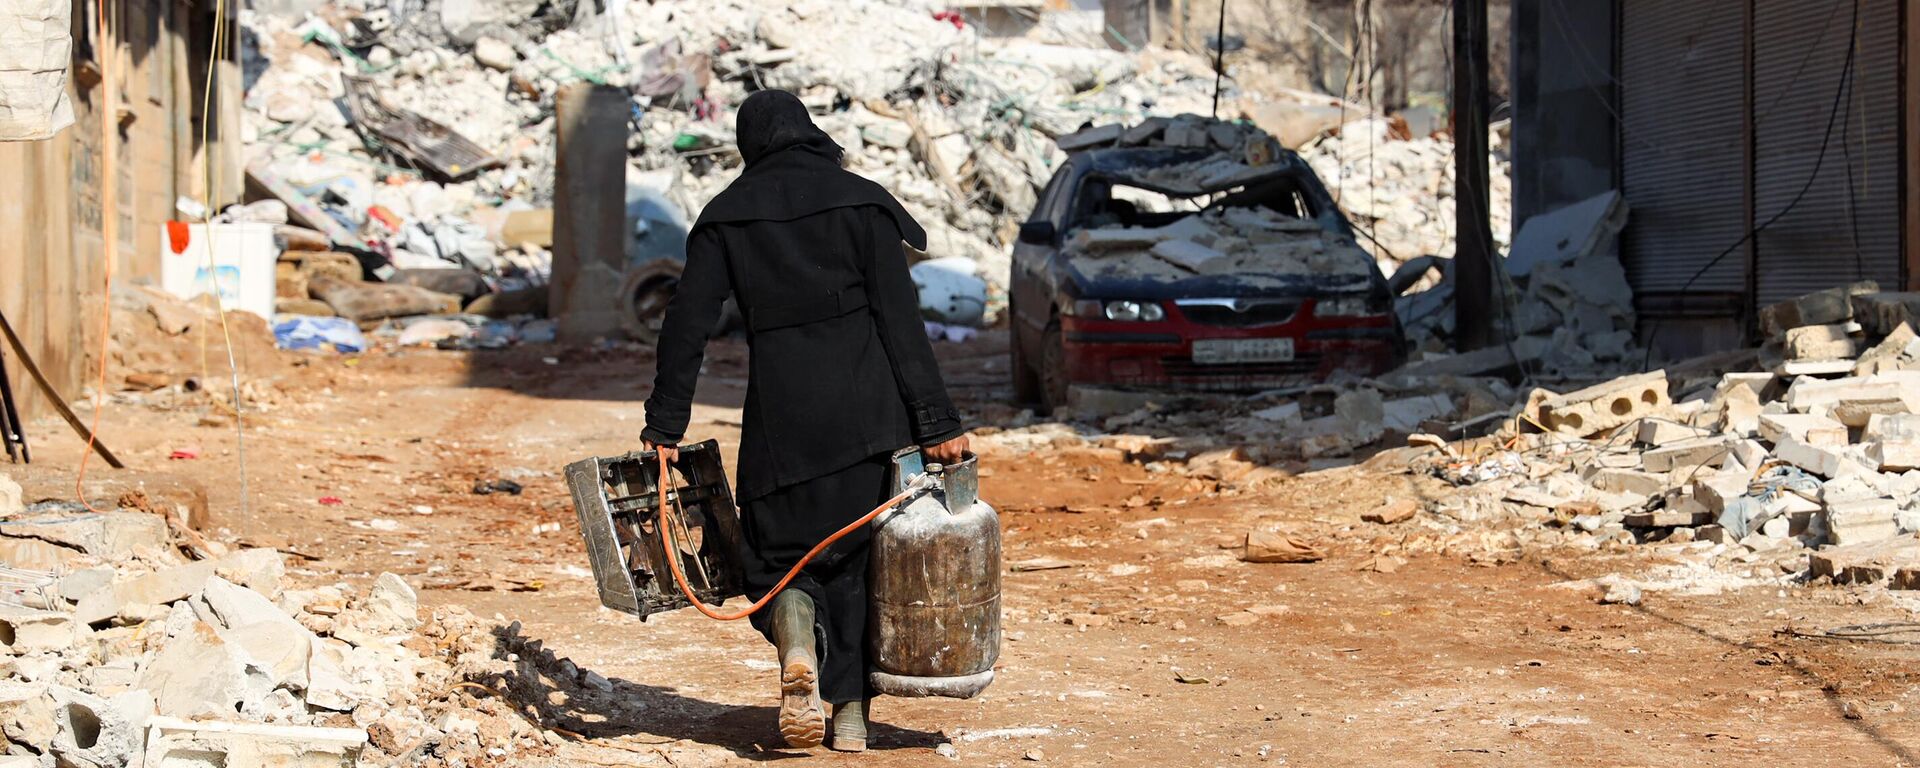 Mujer rescata una pequeña estufa y una bombona de gas, en la ciudad siria de Jindayris, Alepo controlada por los rebeldes, el 10 de febrero de 2023  - Sputnik Mundo, 1920, 12.02.2023